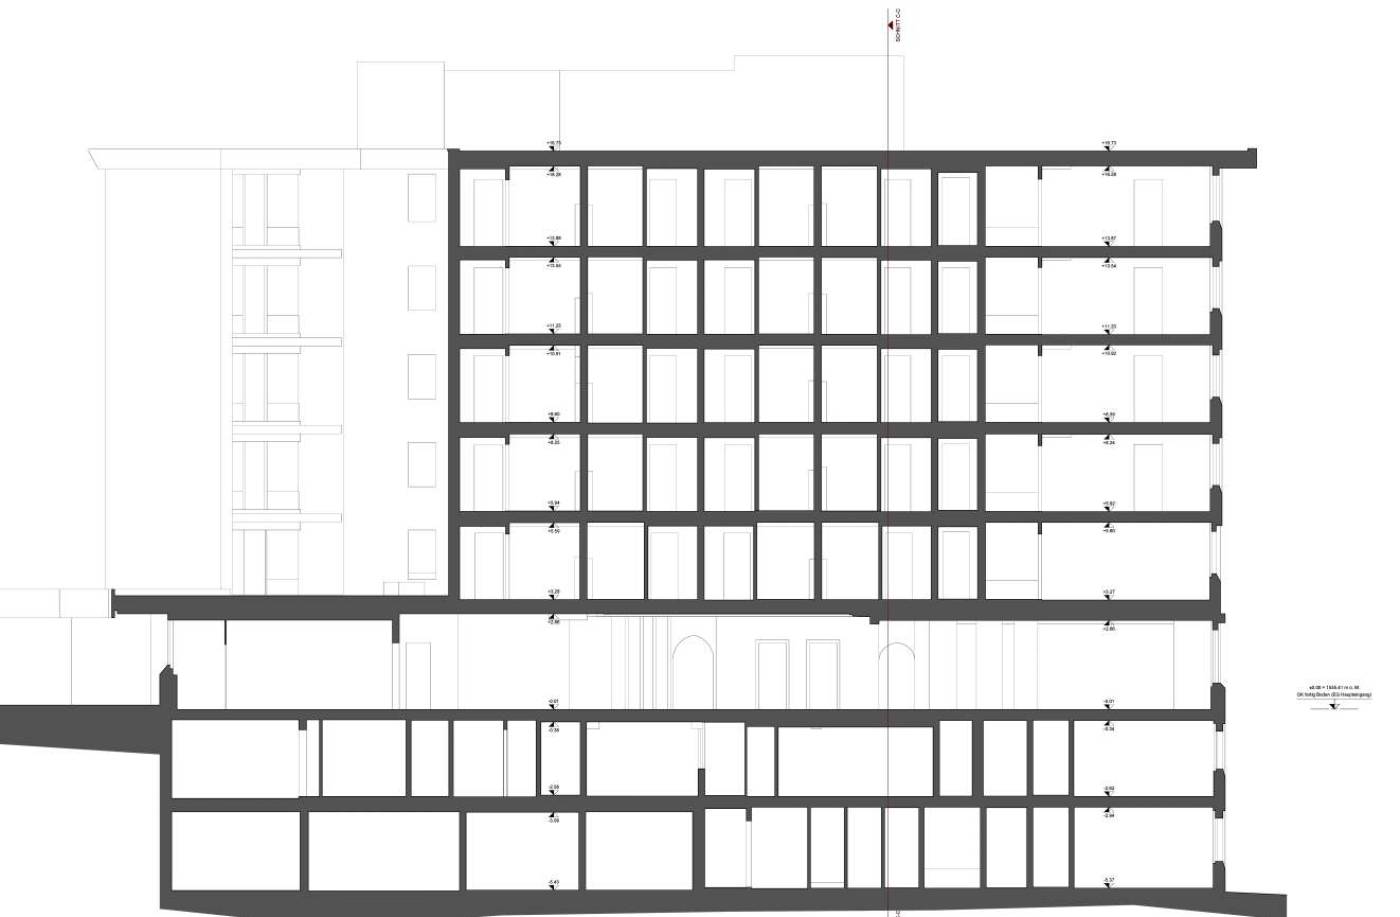 Gebäudevermessung
Kongresshotel, Davos
2D-Pläne, Fixpunktnetz für Grundlagevermessung, Aufnahme mittels Tachymeter und 3D-Laserscanner, Erstellen von 2D-Grundlagen in Form von Grundrissen, Schnitten und Fassadenplänen